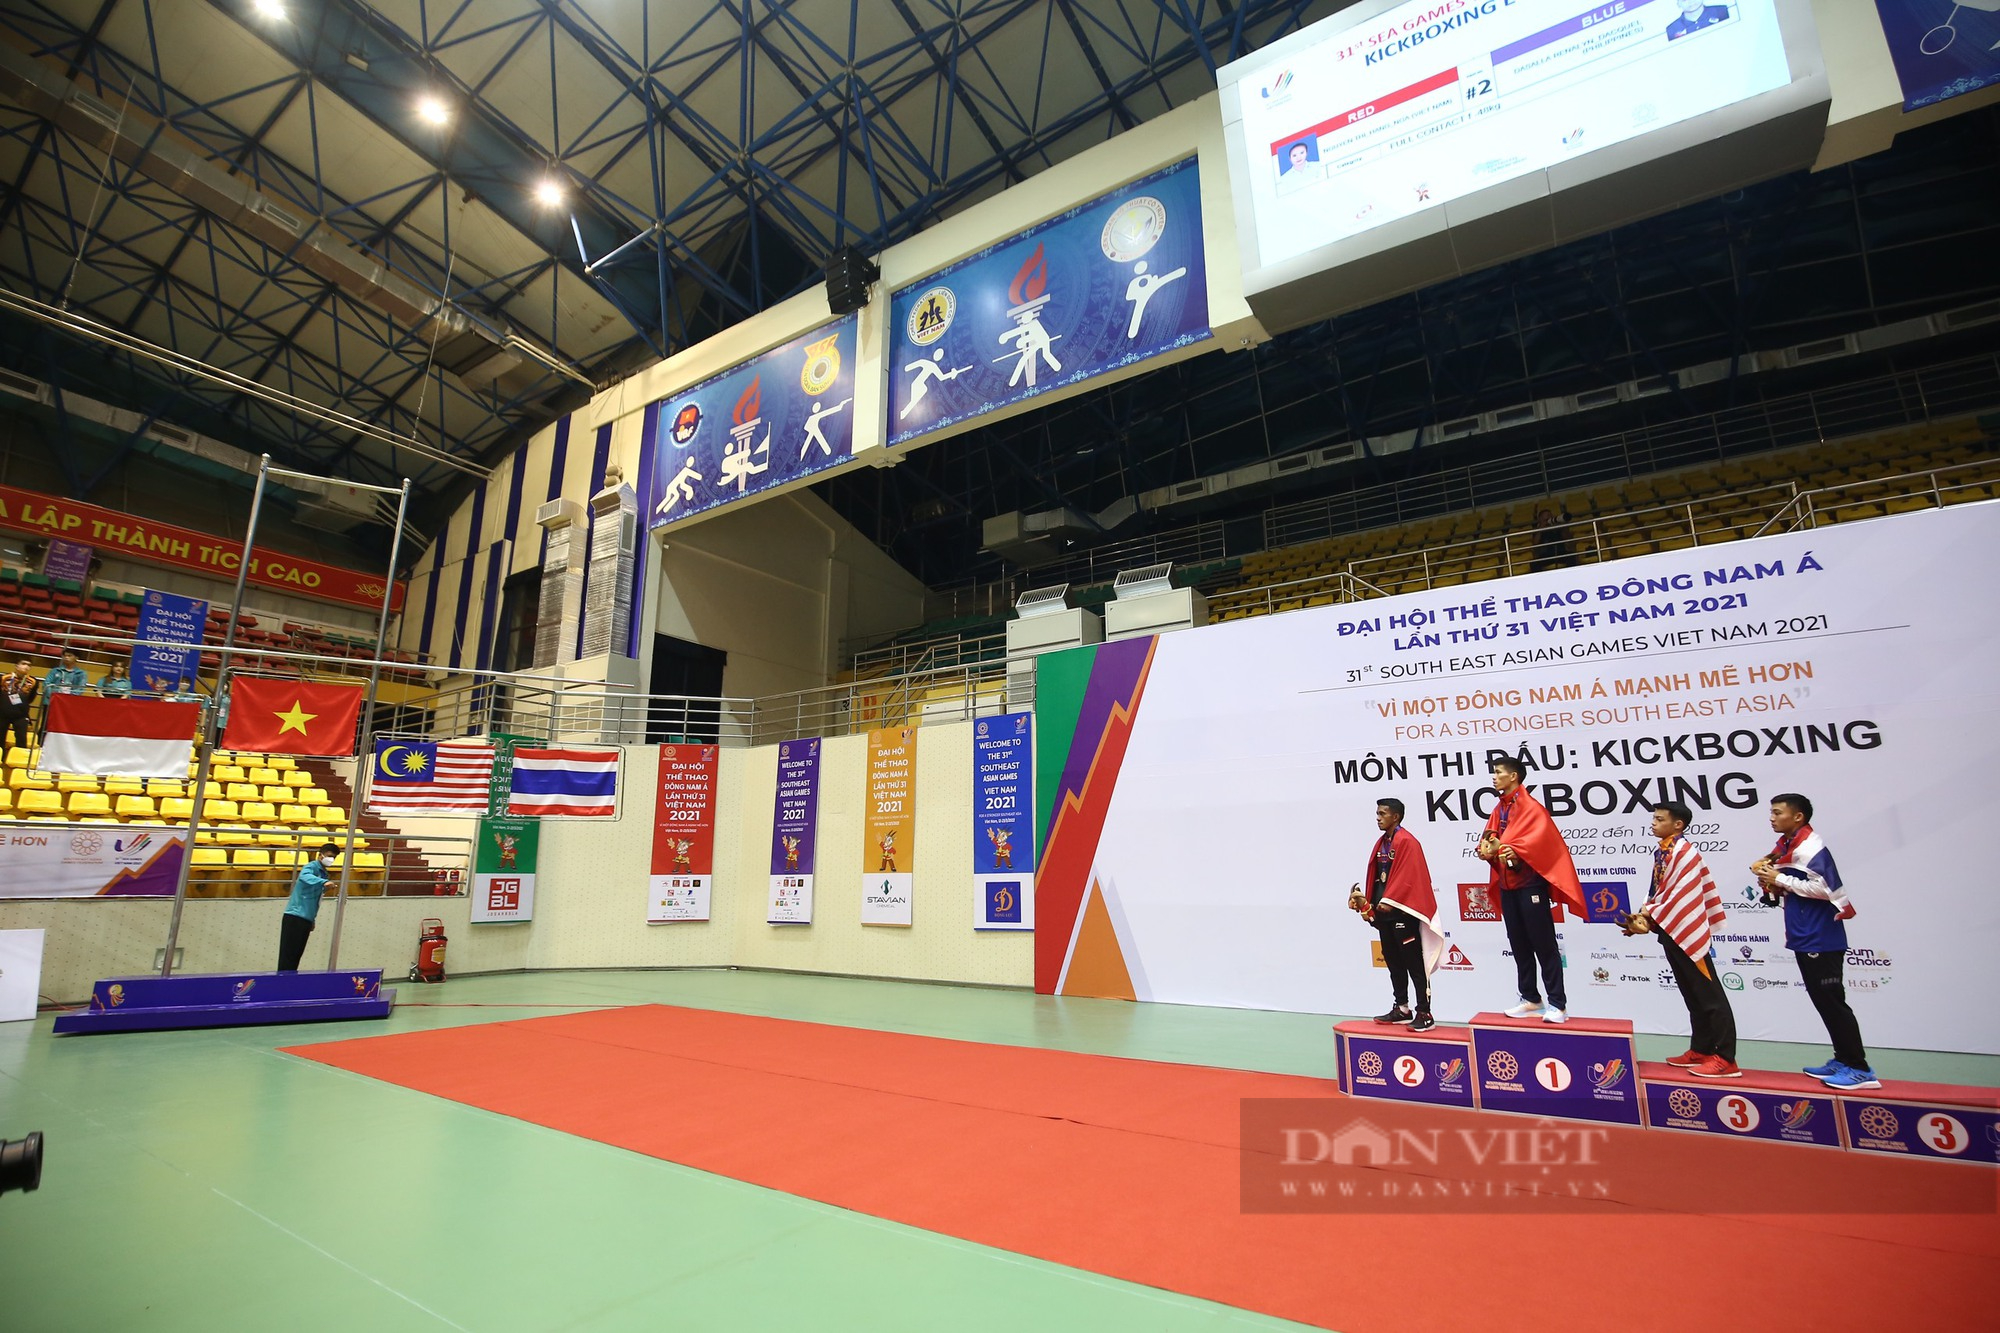 Clip: Huỳnh Anh Tuấn nói gì sau khi tiếp tục bảo vệ chức vô địch Kickboxing tại SEA games 31 - Ảnh 6.